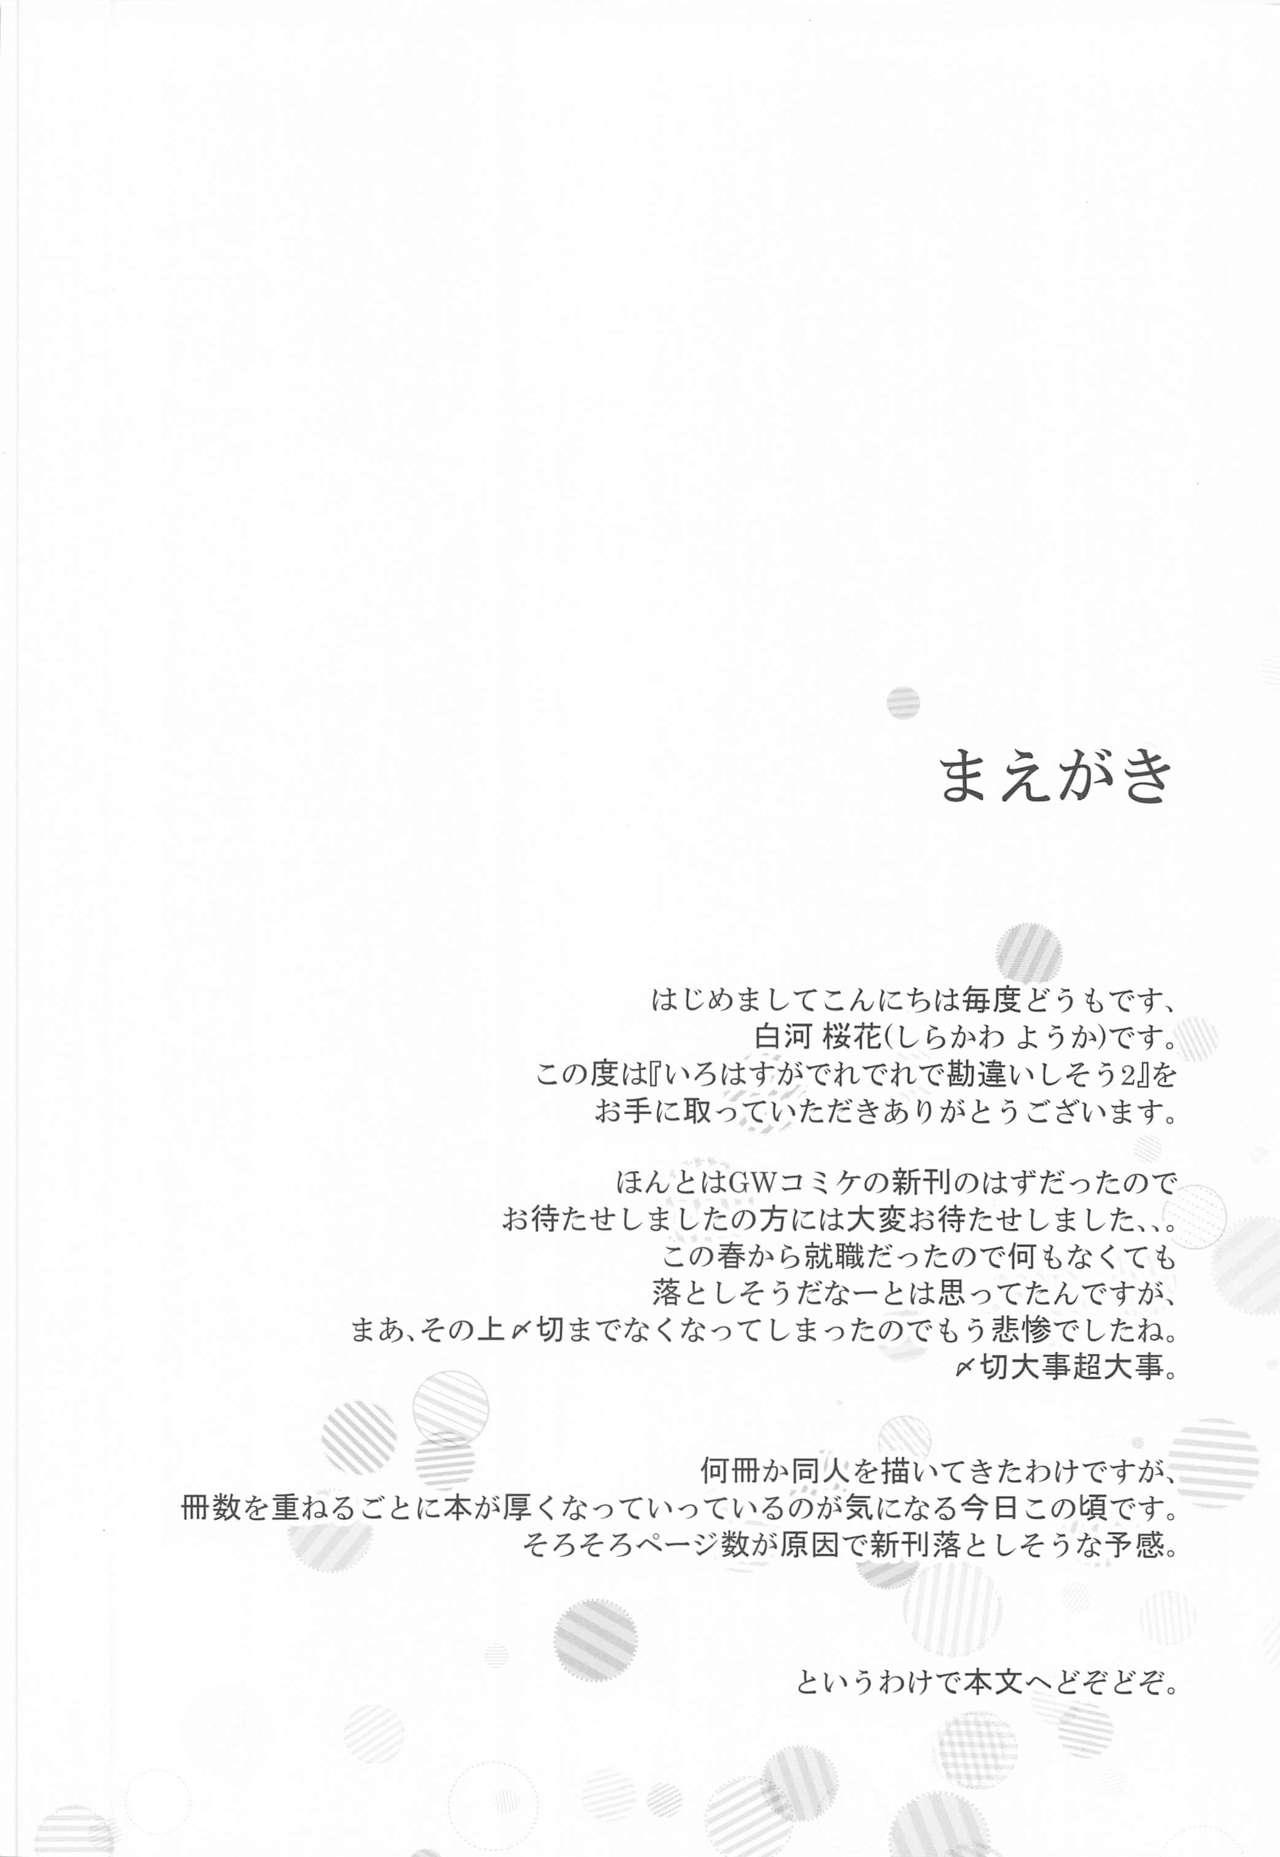 Seduction Porn Irohasu ga Deredere de Kanchigai Shisou 2 - Yahari ore no seishun love come wa machigatteiru Pure18 - Page 3